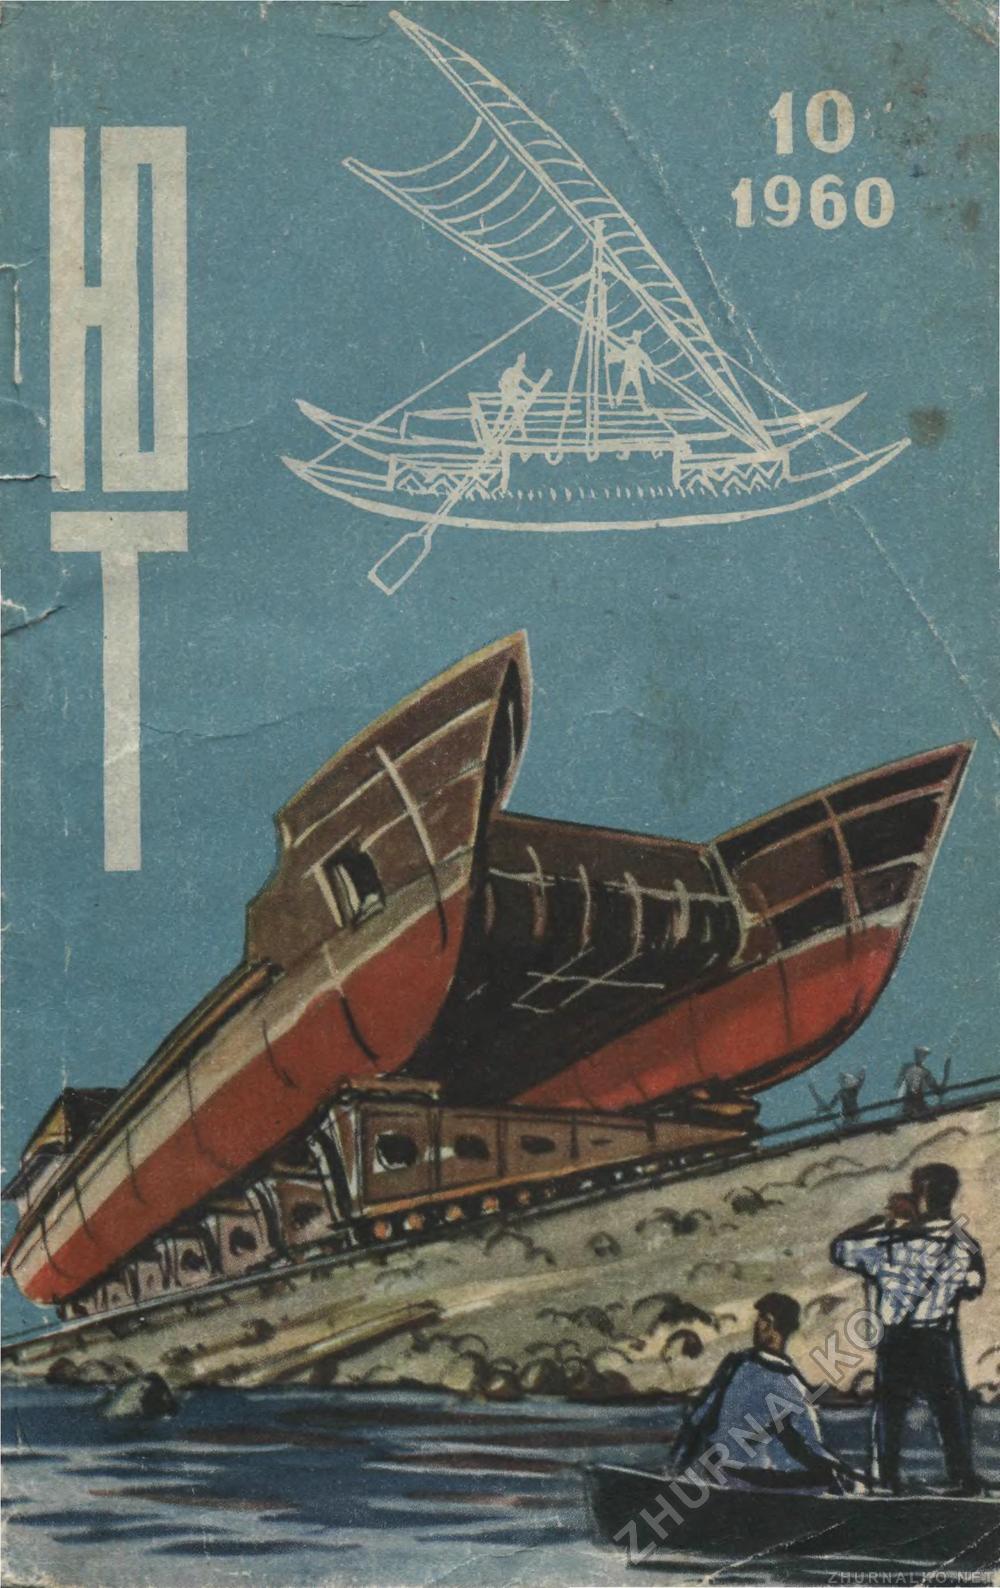   1960-10,  1